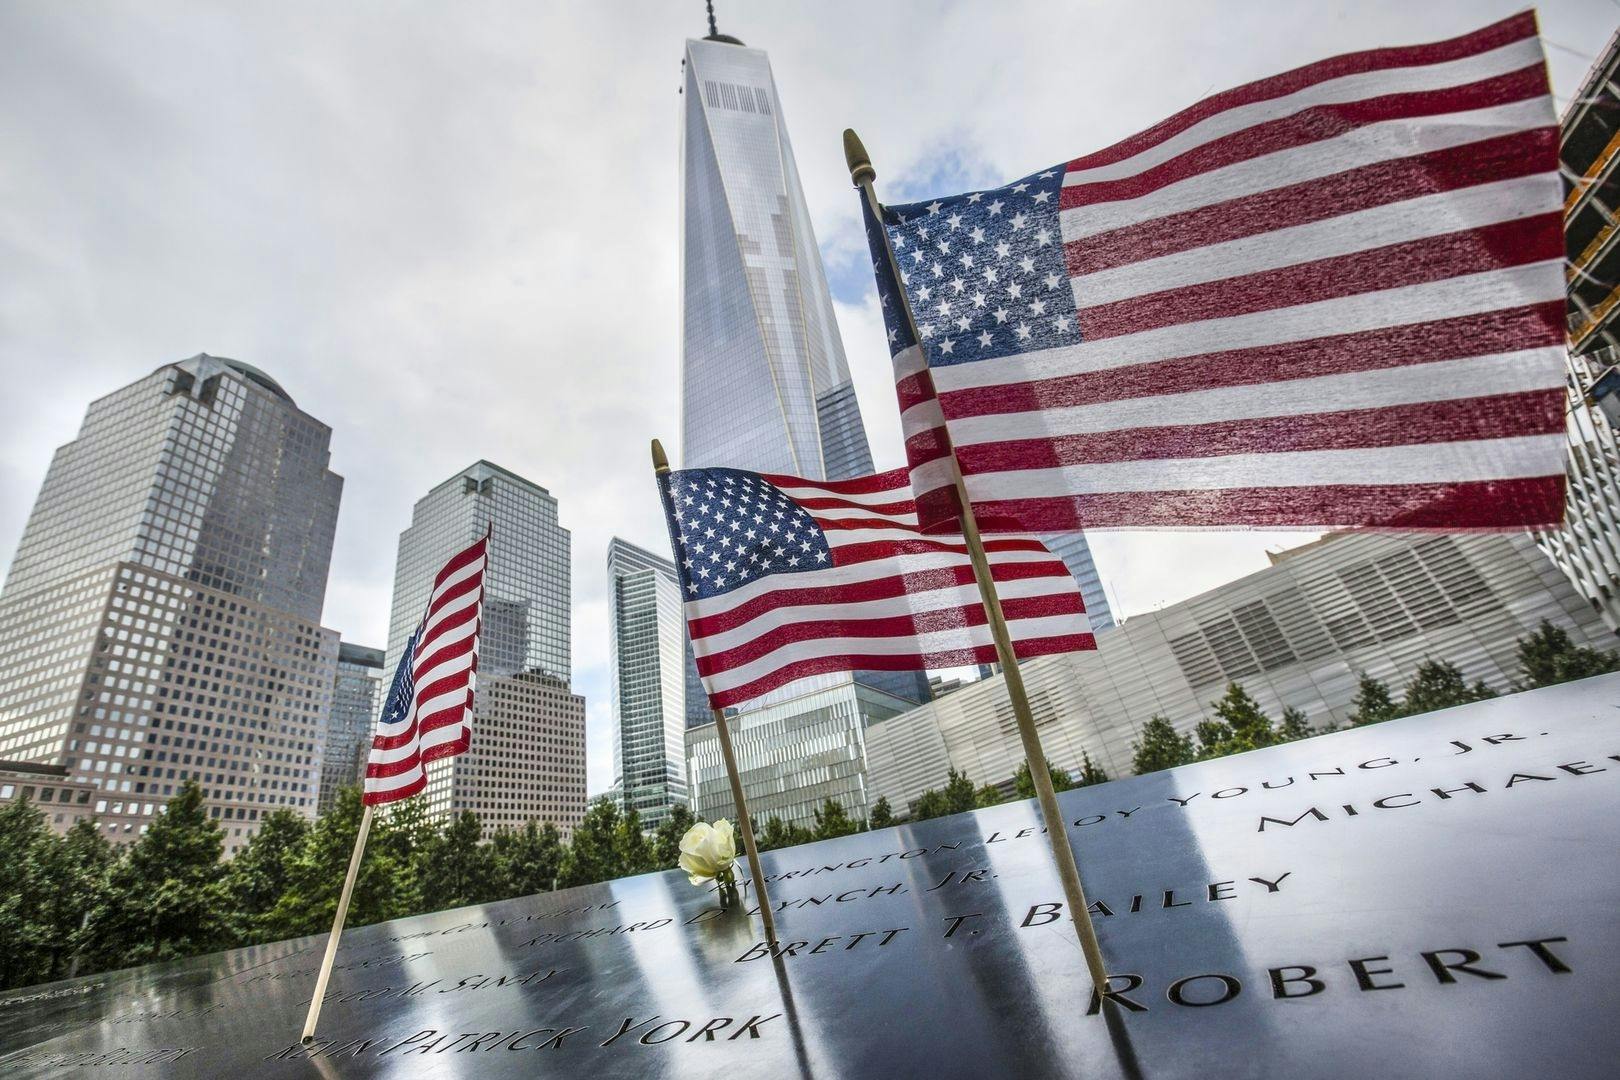 9-11 Memorial bilet bez kolejki i wycieczka z przewodnikiem